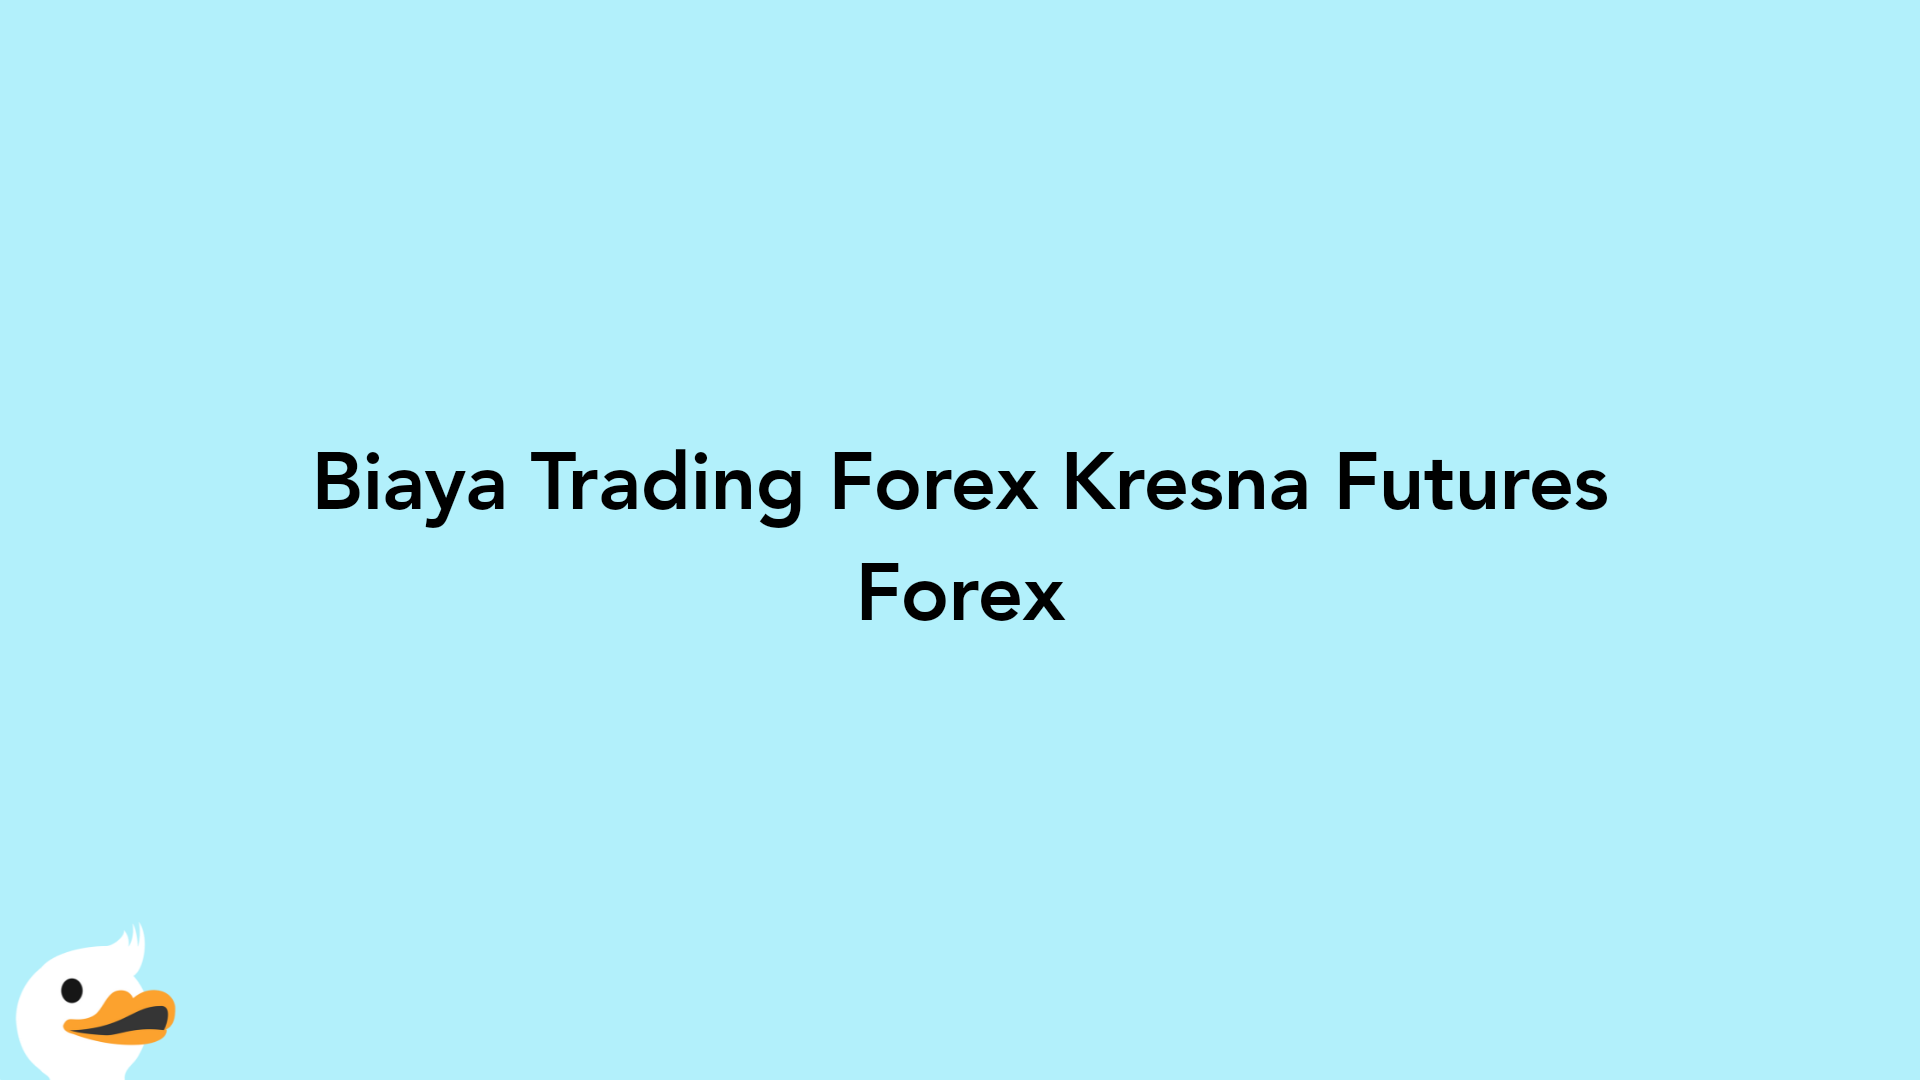 Biaya Trading Forex Kresna Futures Forex